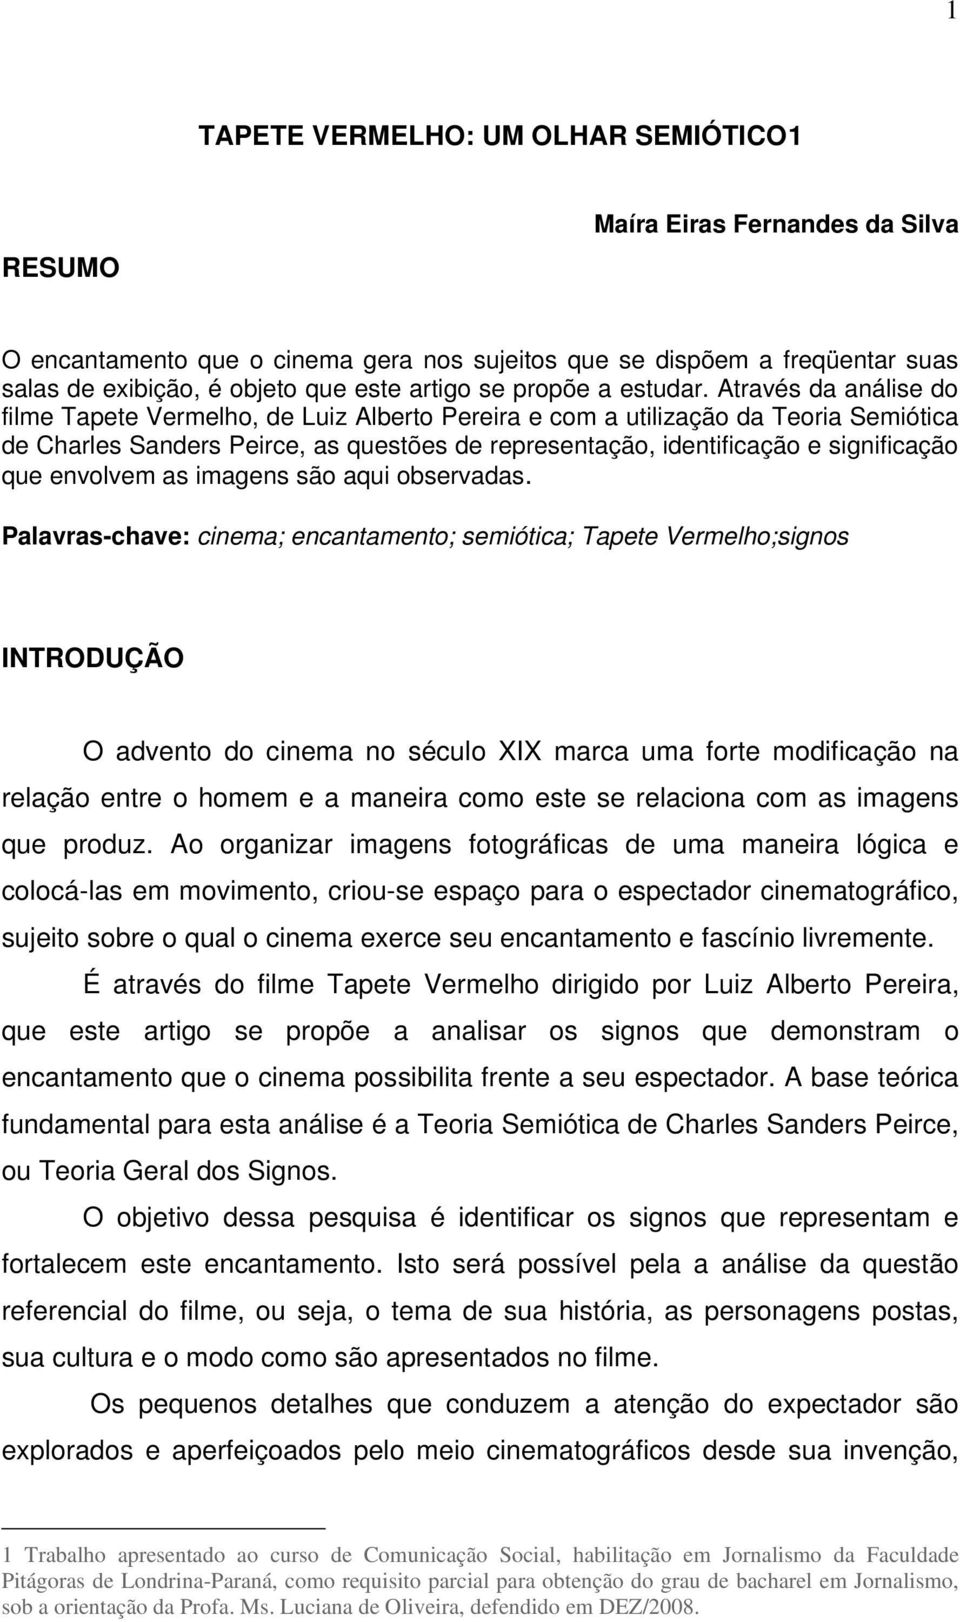 TAPETE VERMELHO: UM OLHAR SEMIÓTICO1 - PDF Download grátis